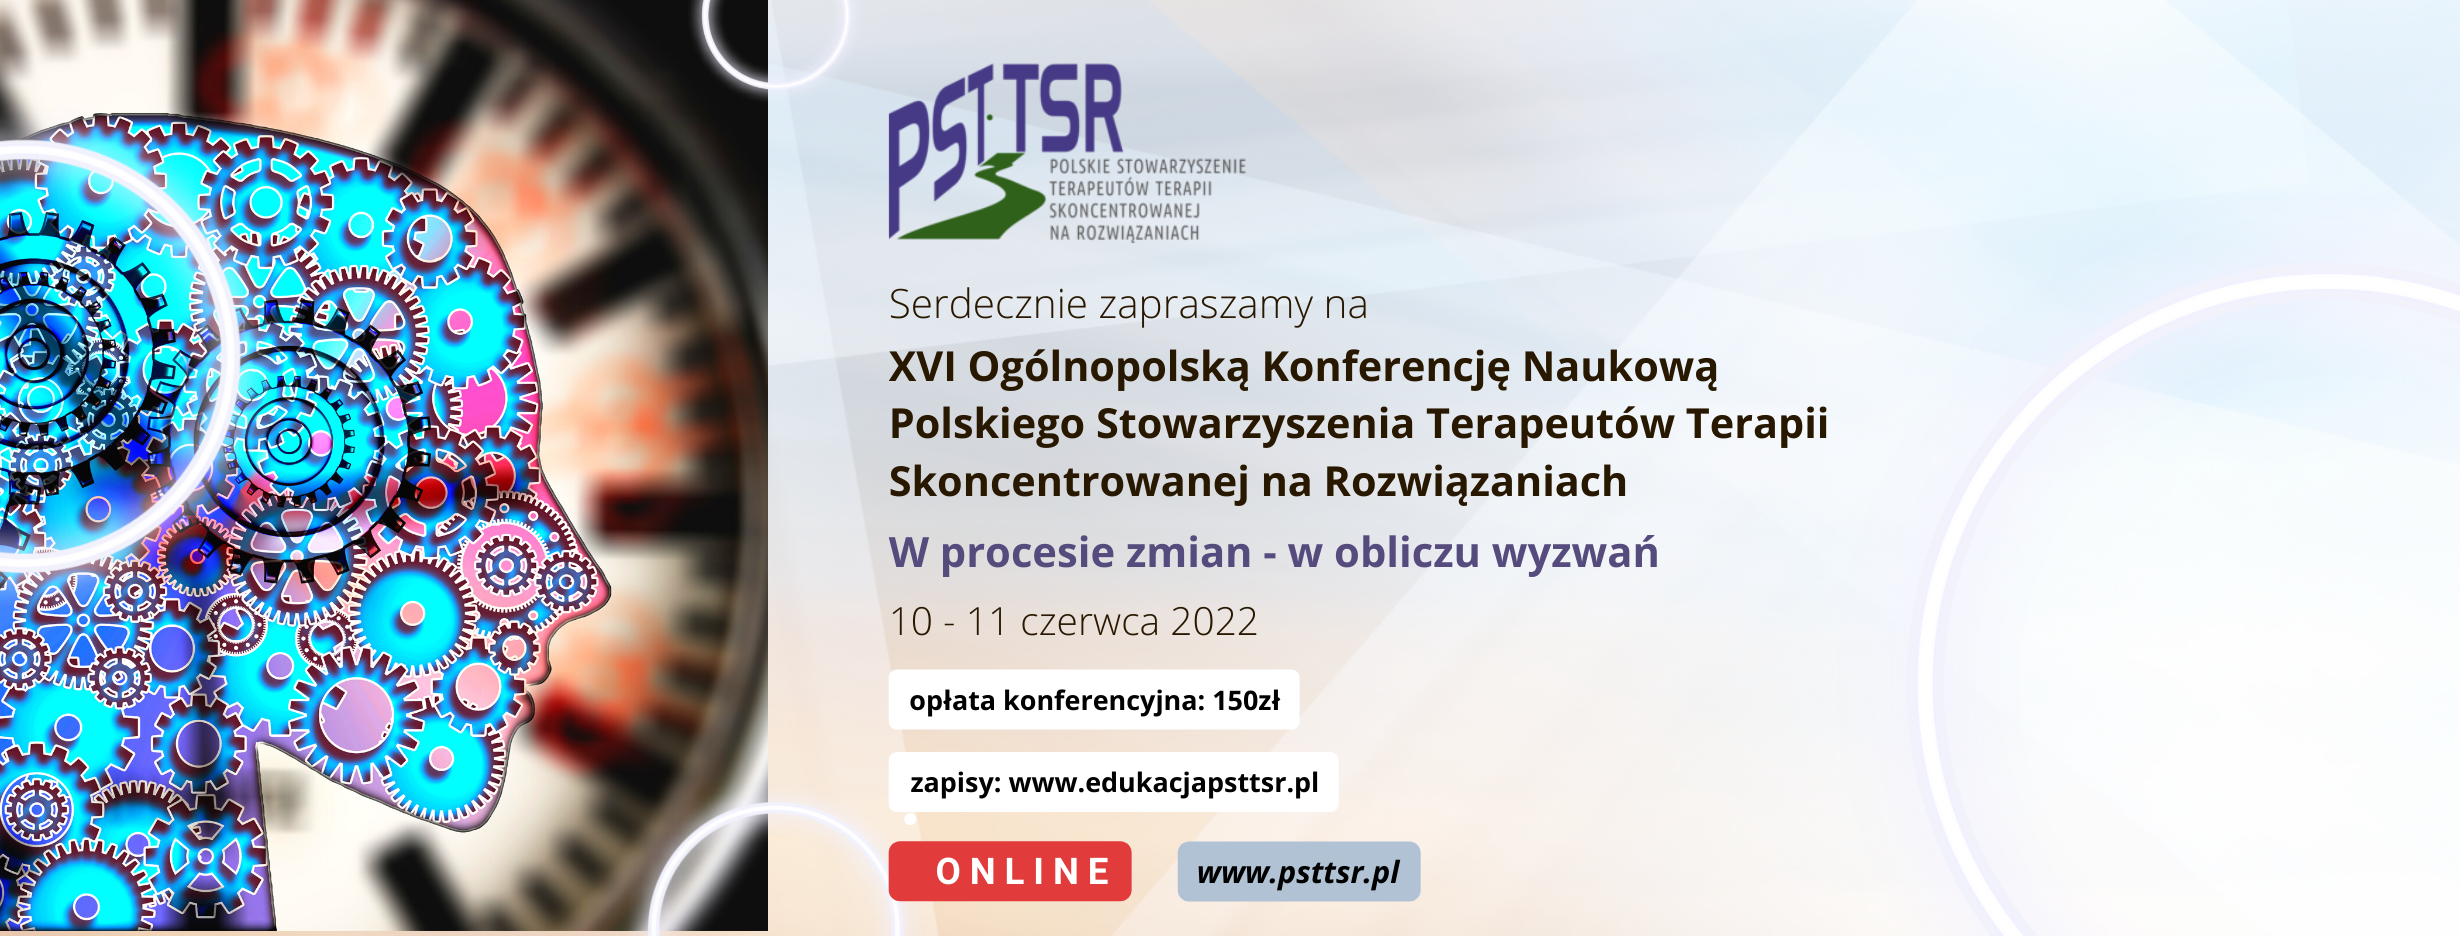 Nagrania z XVI Ogólnopolskiej Konferencji Naukowej PSTTSR